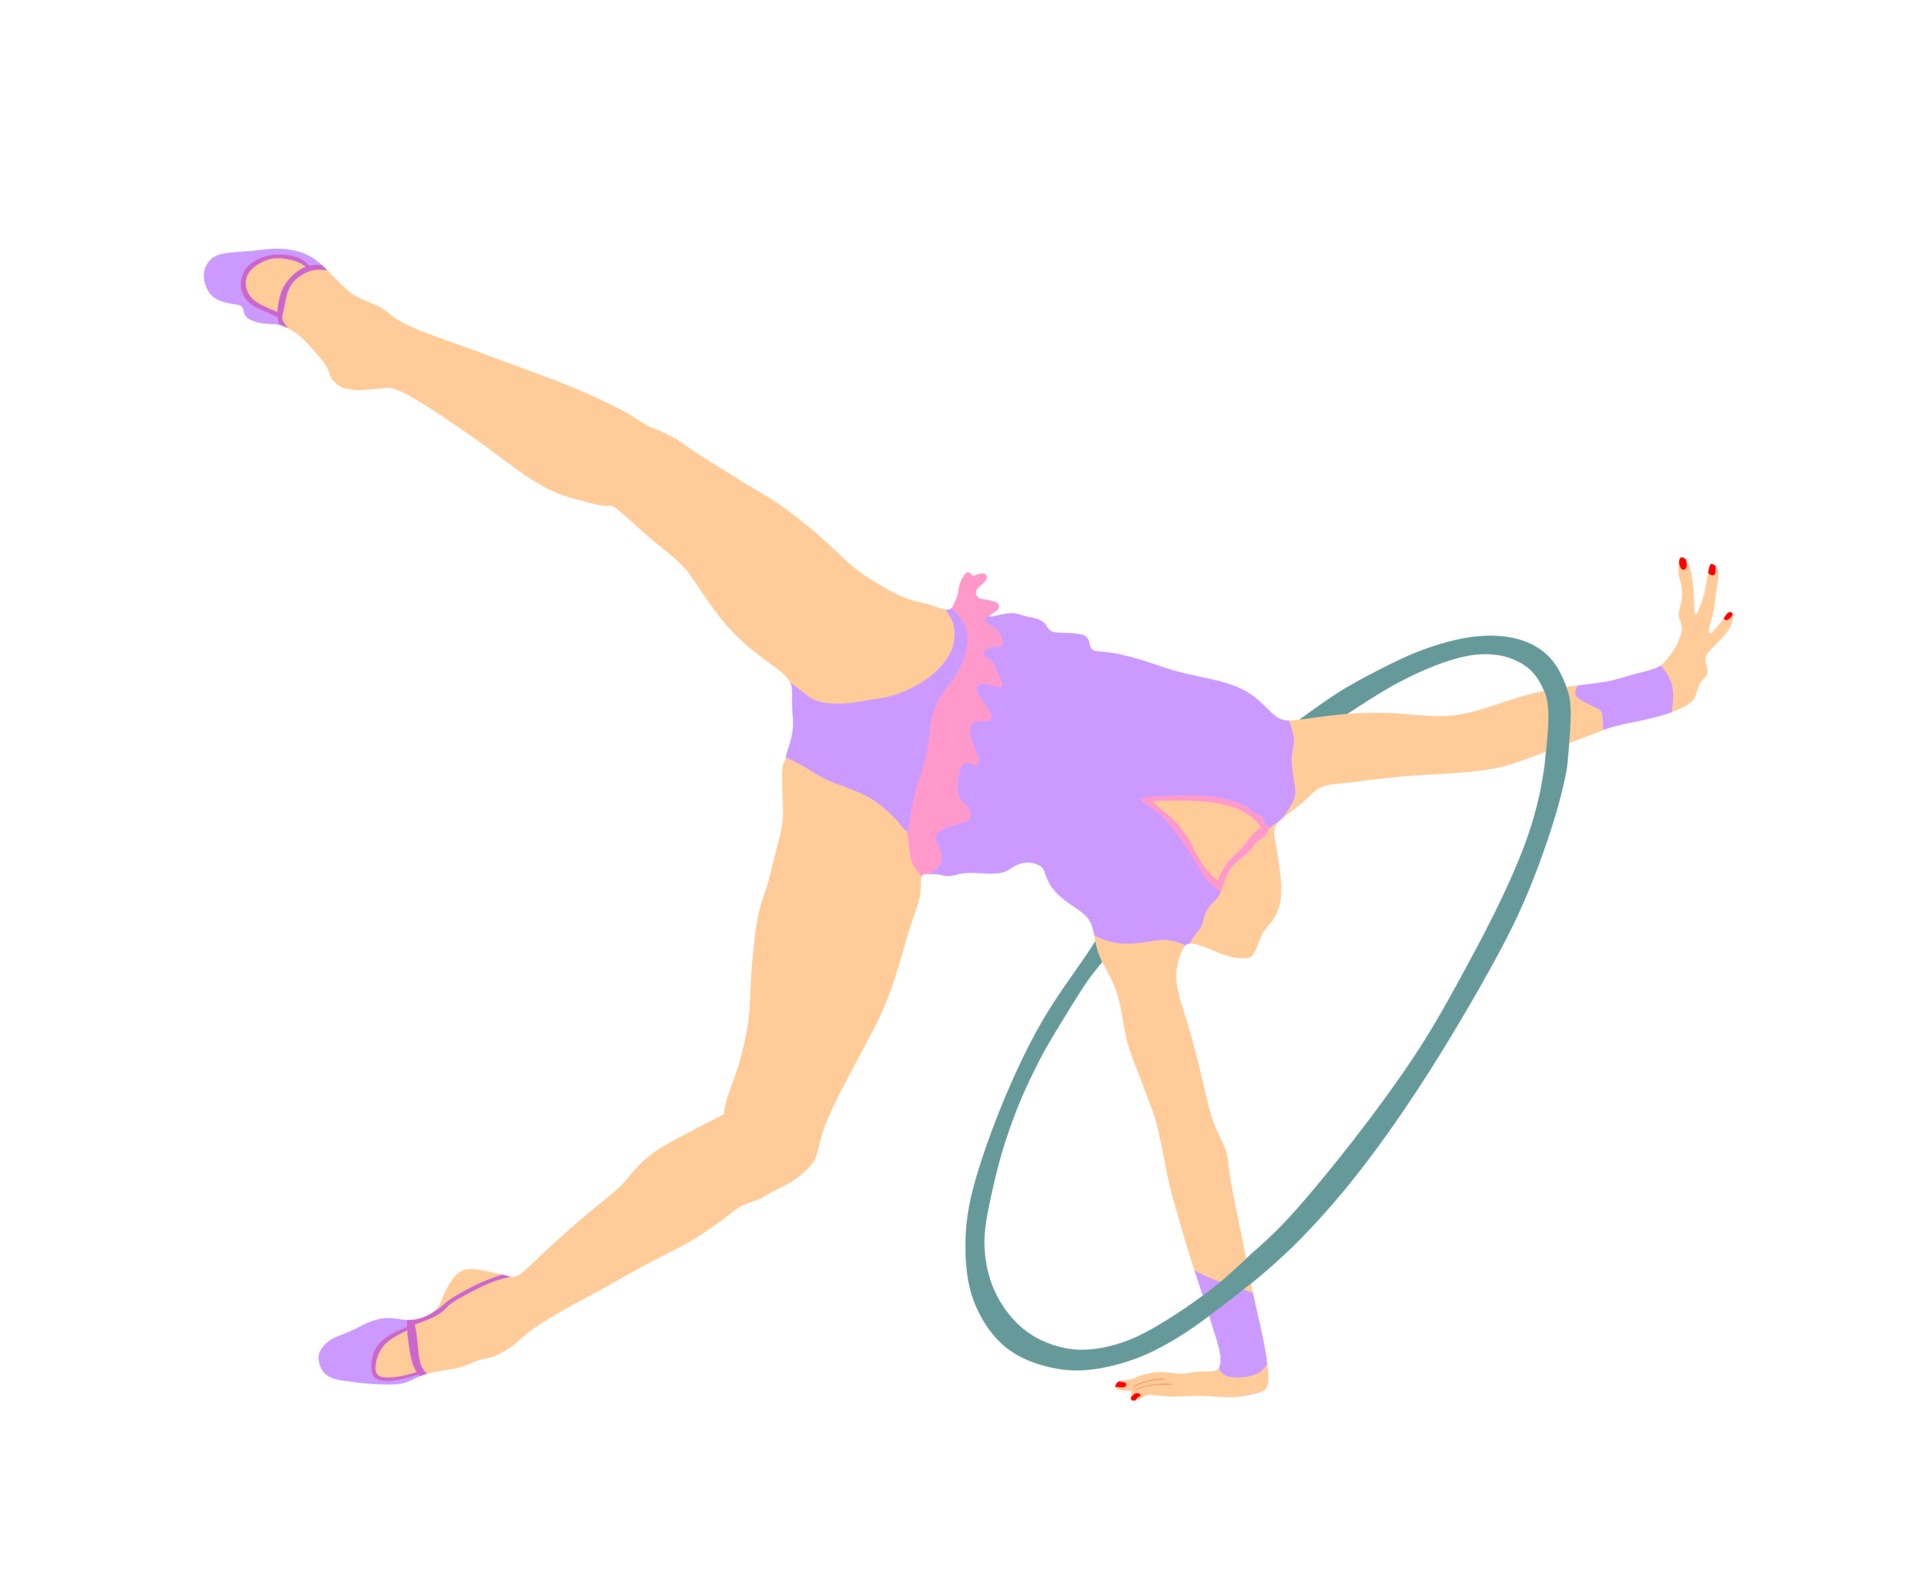 Rhythmic Gymnastics lady with hoop. 3416630 Vector Art at Vecteezy